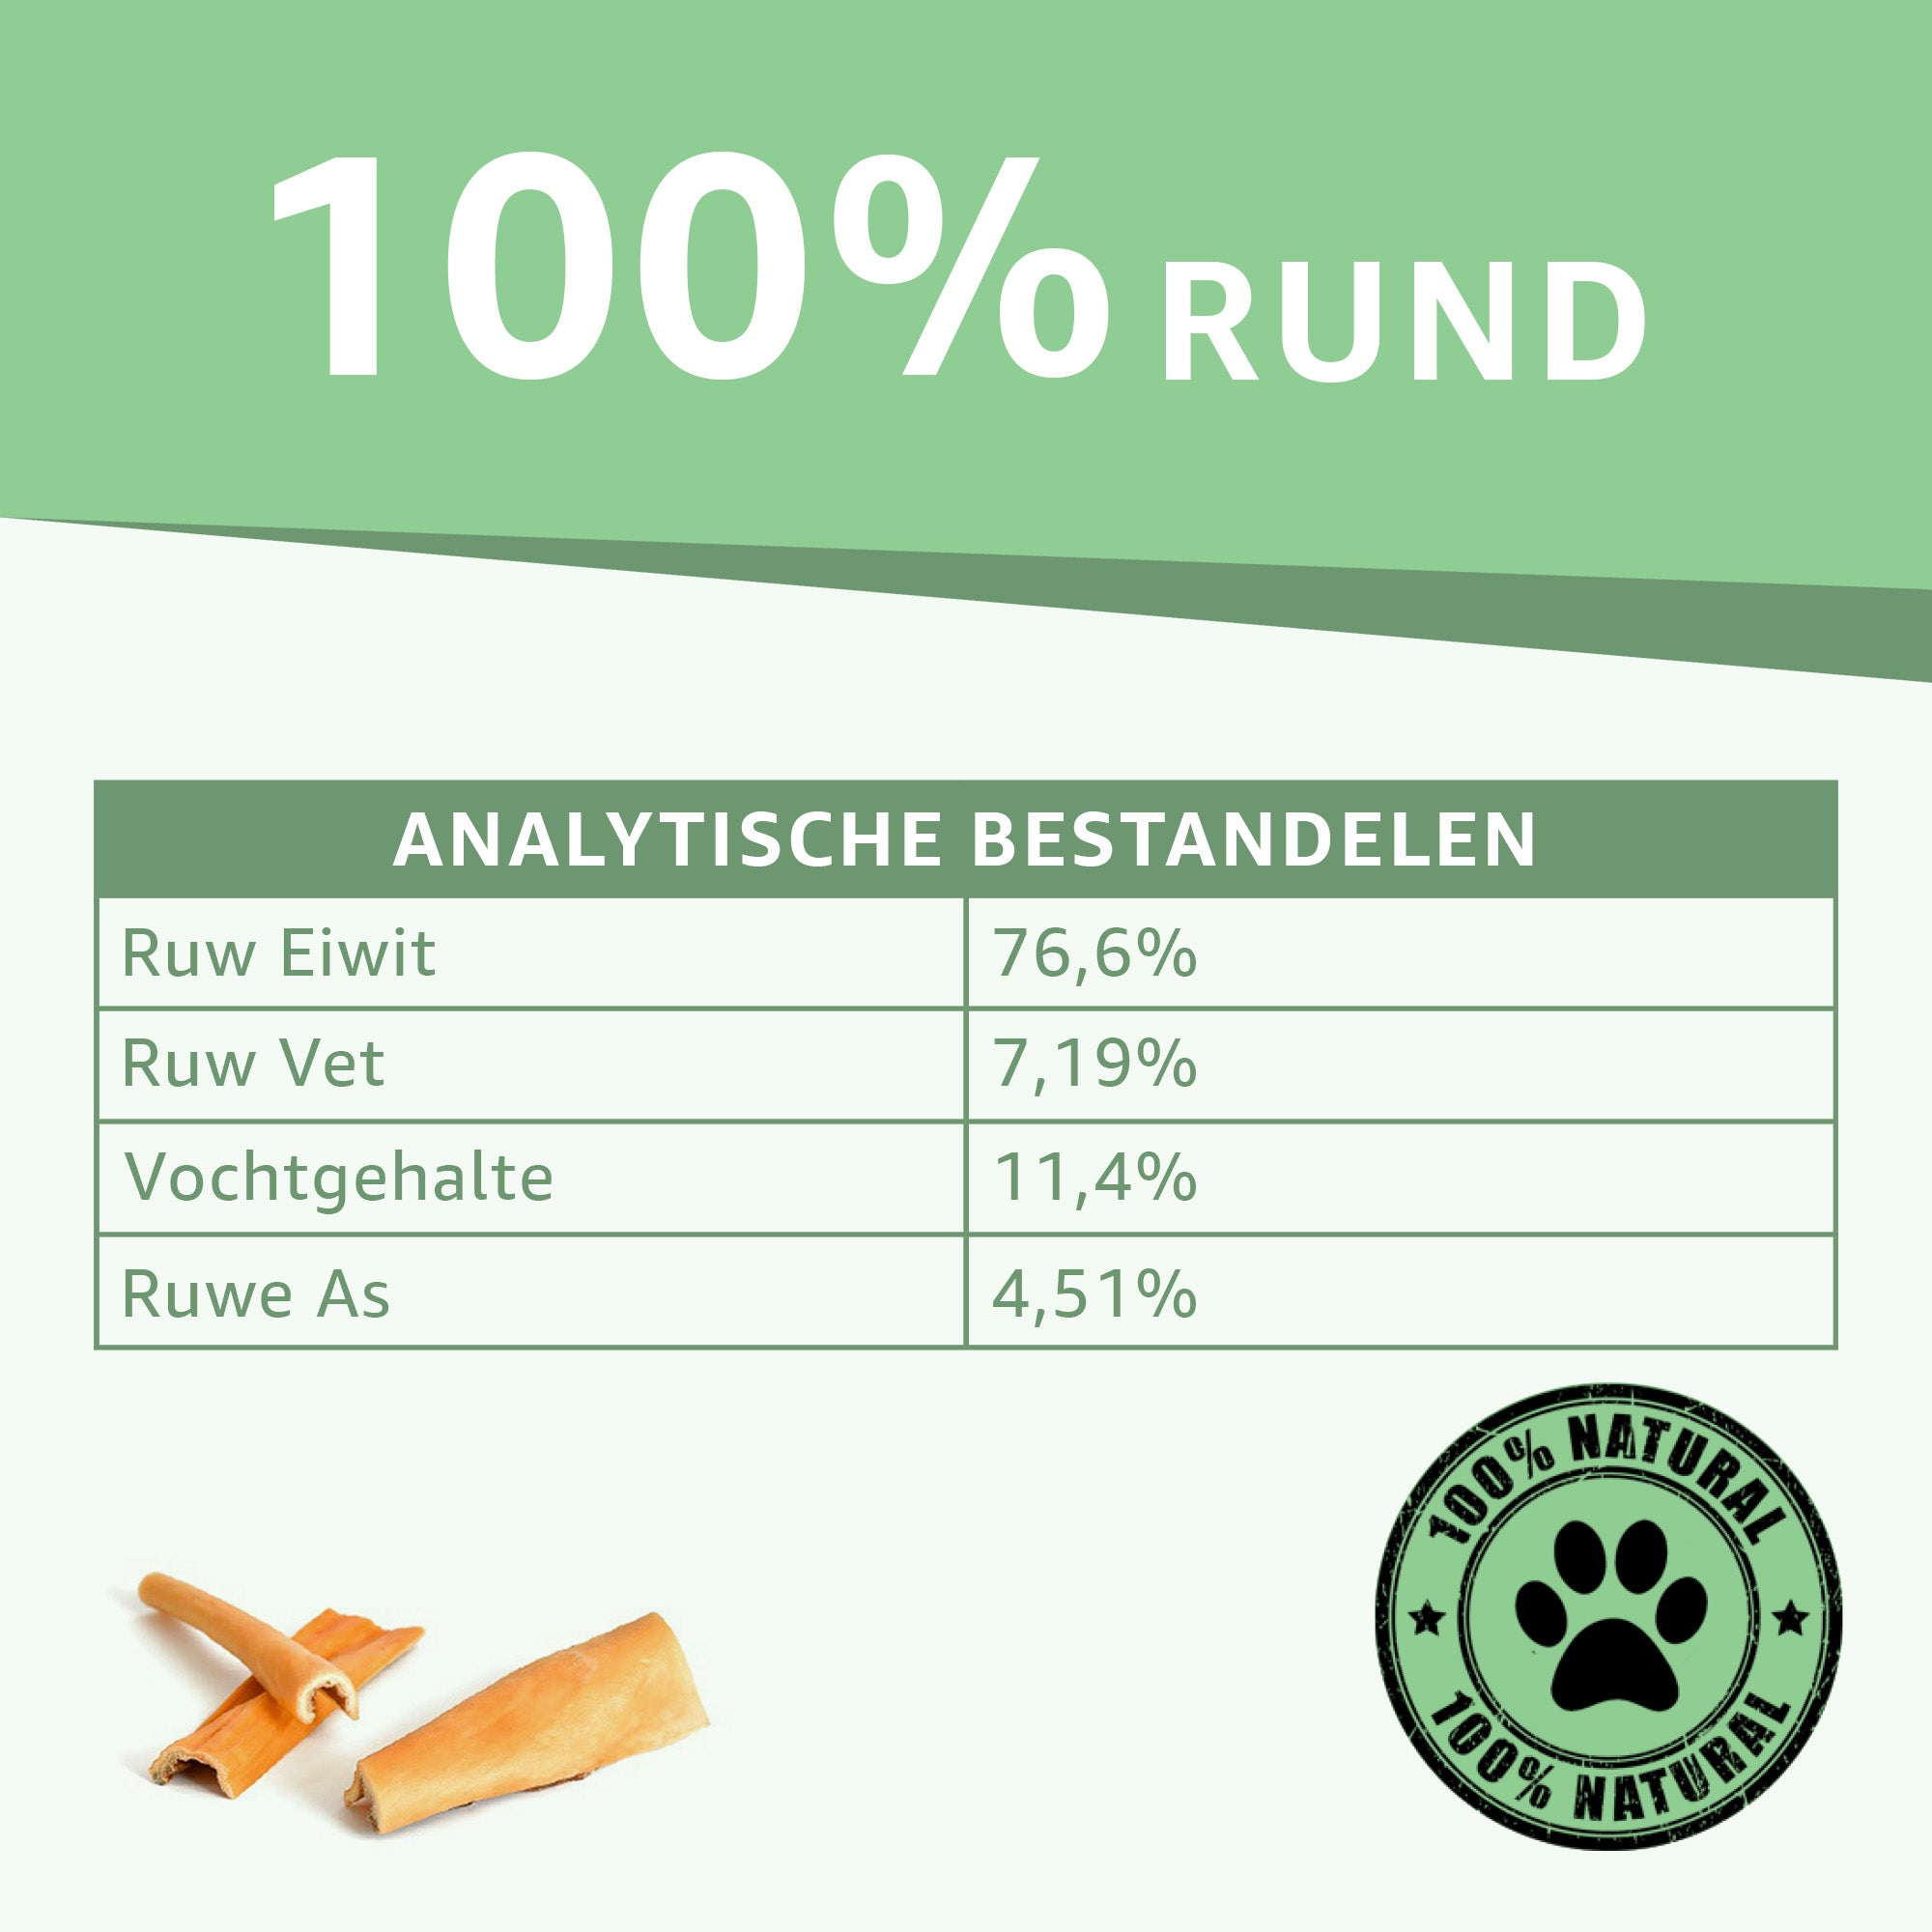 "Analytische Bestandsdelen Buffelhuid Kauwsnack: Voedingswaarde en samenstelling onthuld. Natuurlijke kauwsnack, vrij van toevoegingen. Ideale keuze voor gezonde en smakelijke hondensnacks."